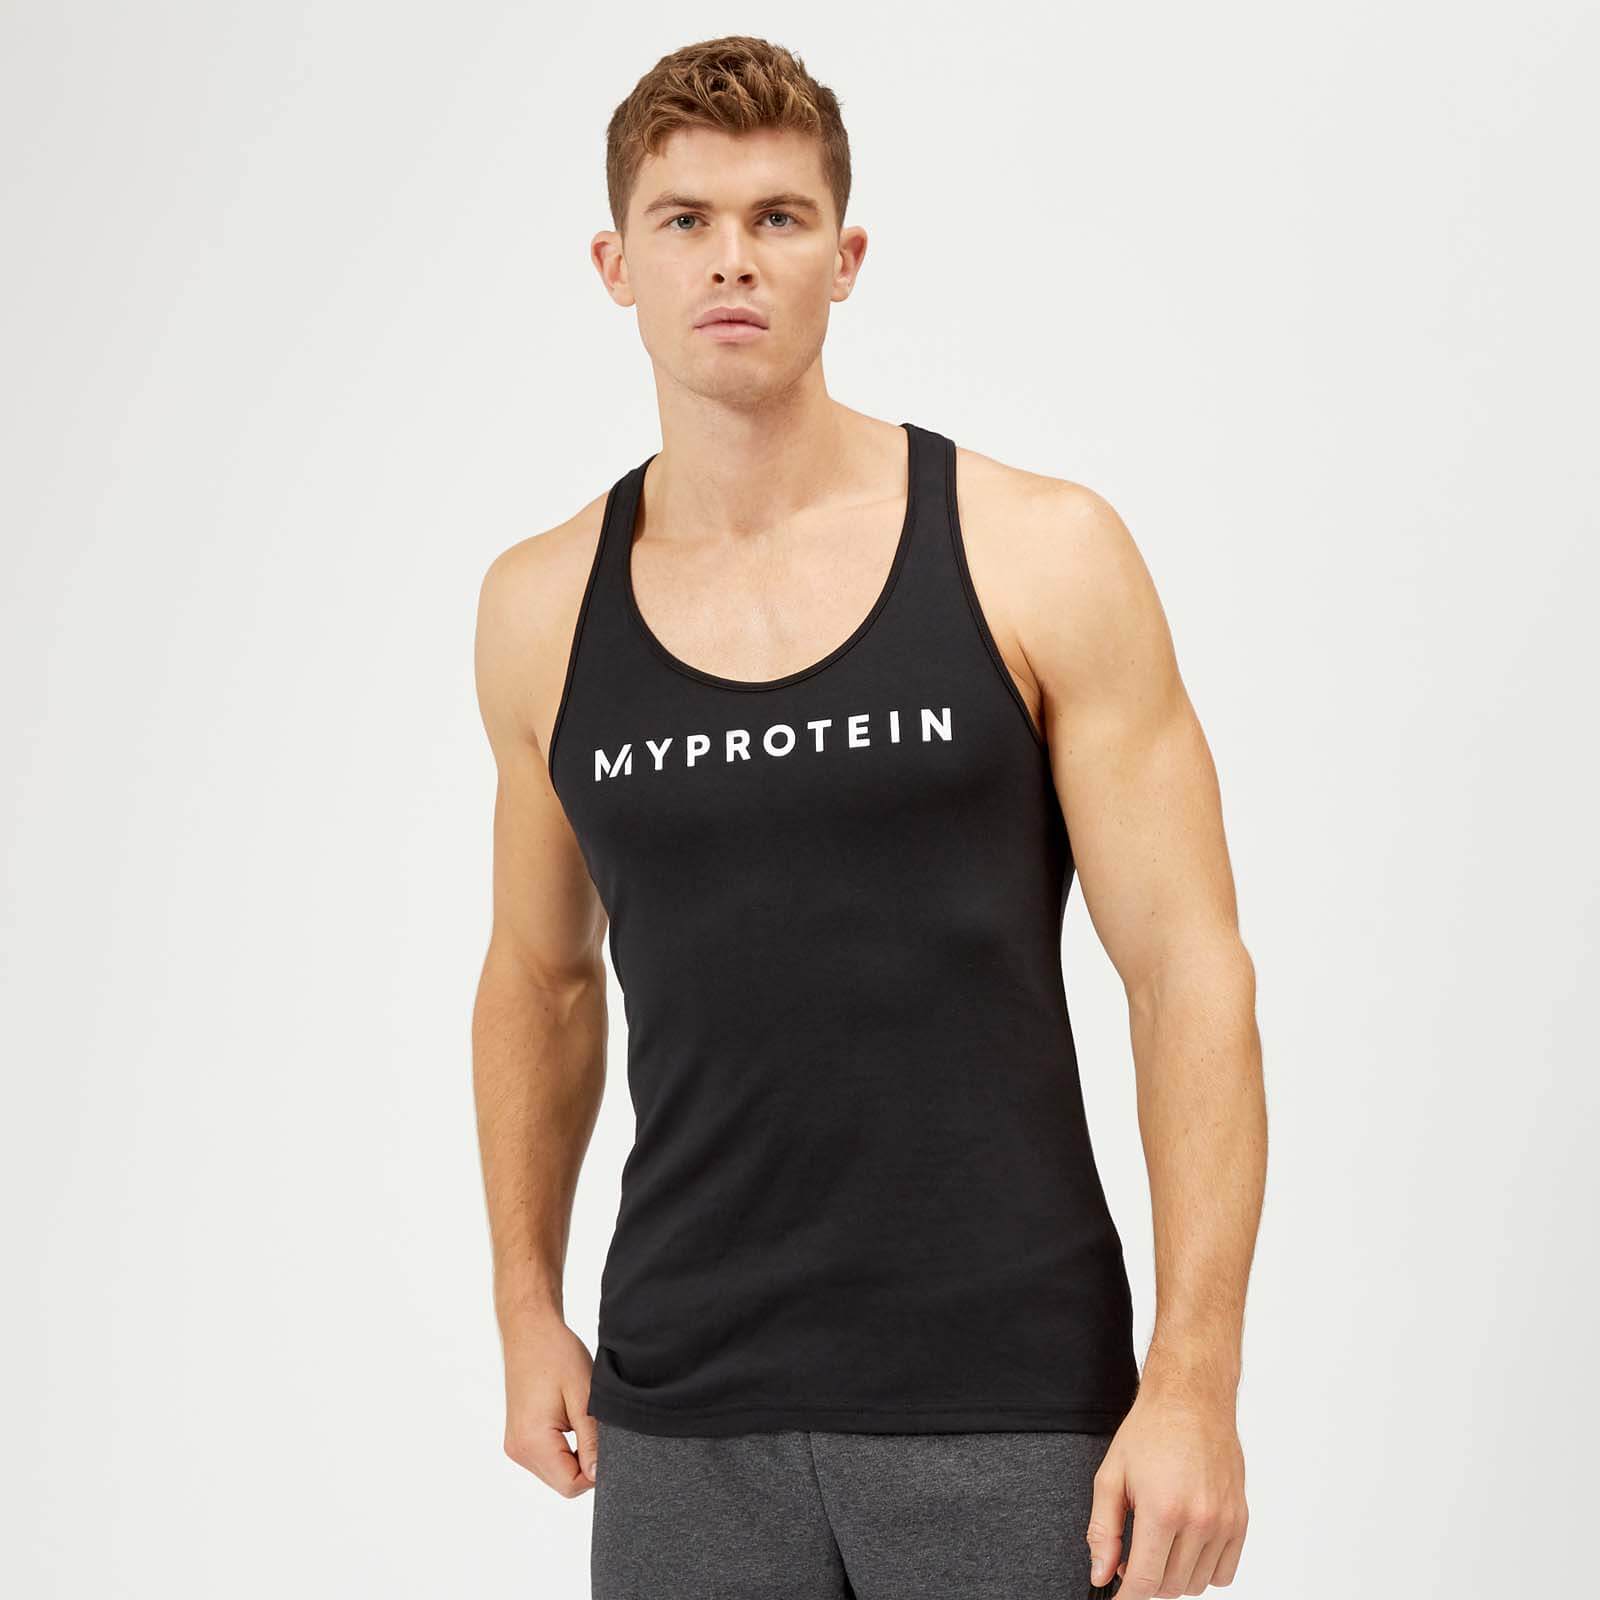 Myprotein Het original stringerhemd - XXL